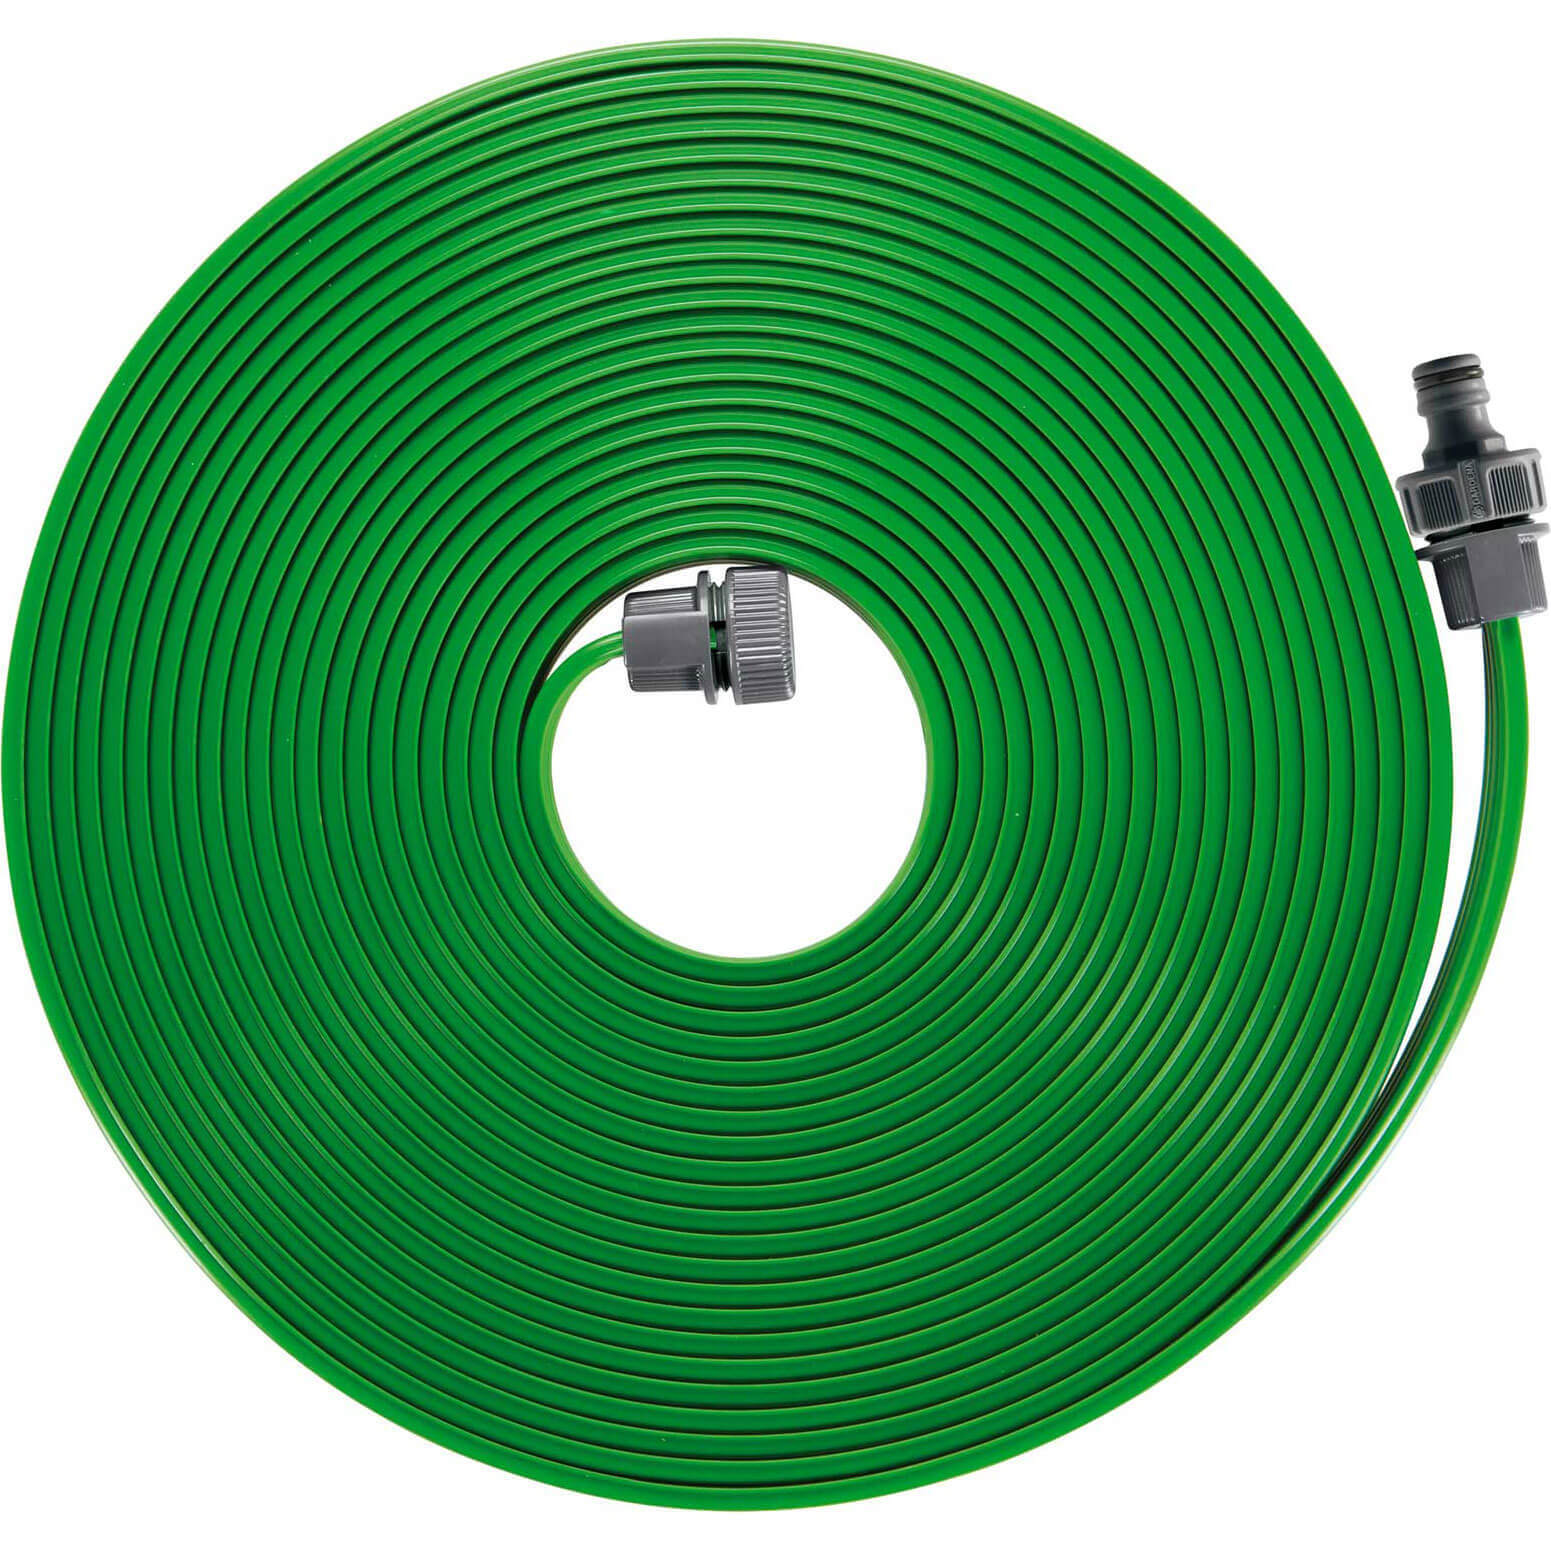 Image of Gardena Sprinkler Hose Pipe 15m Green